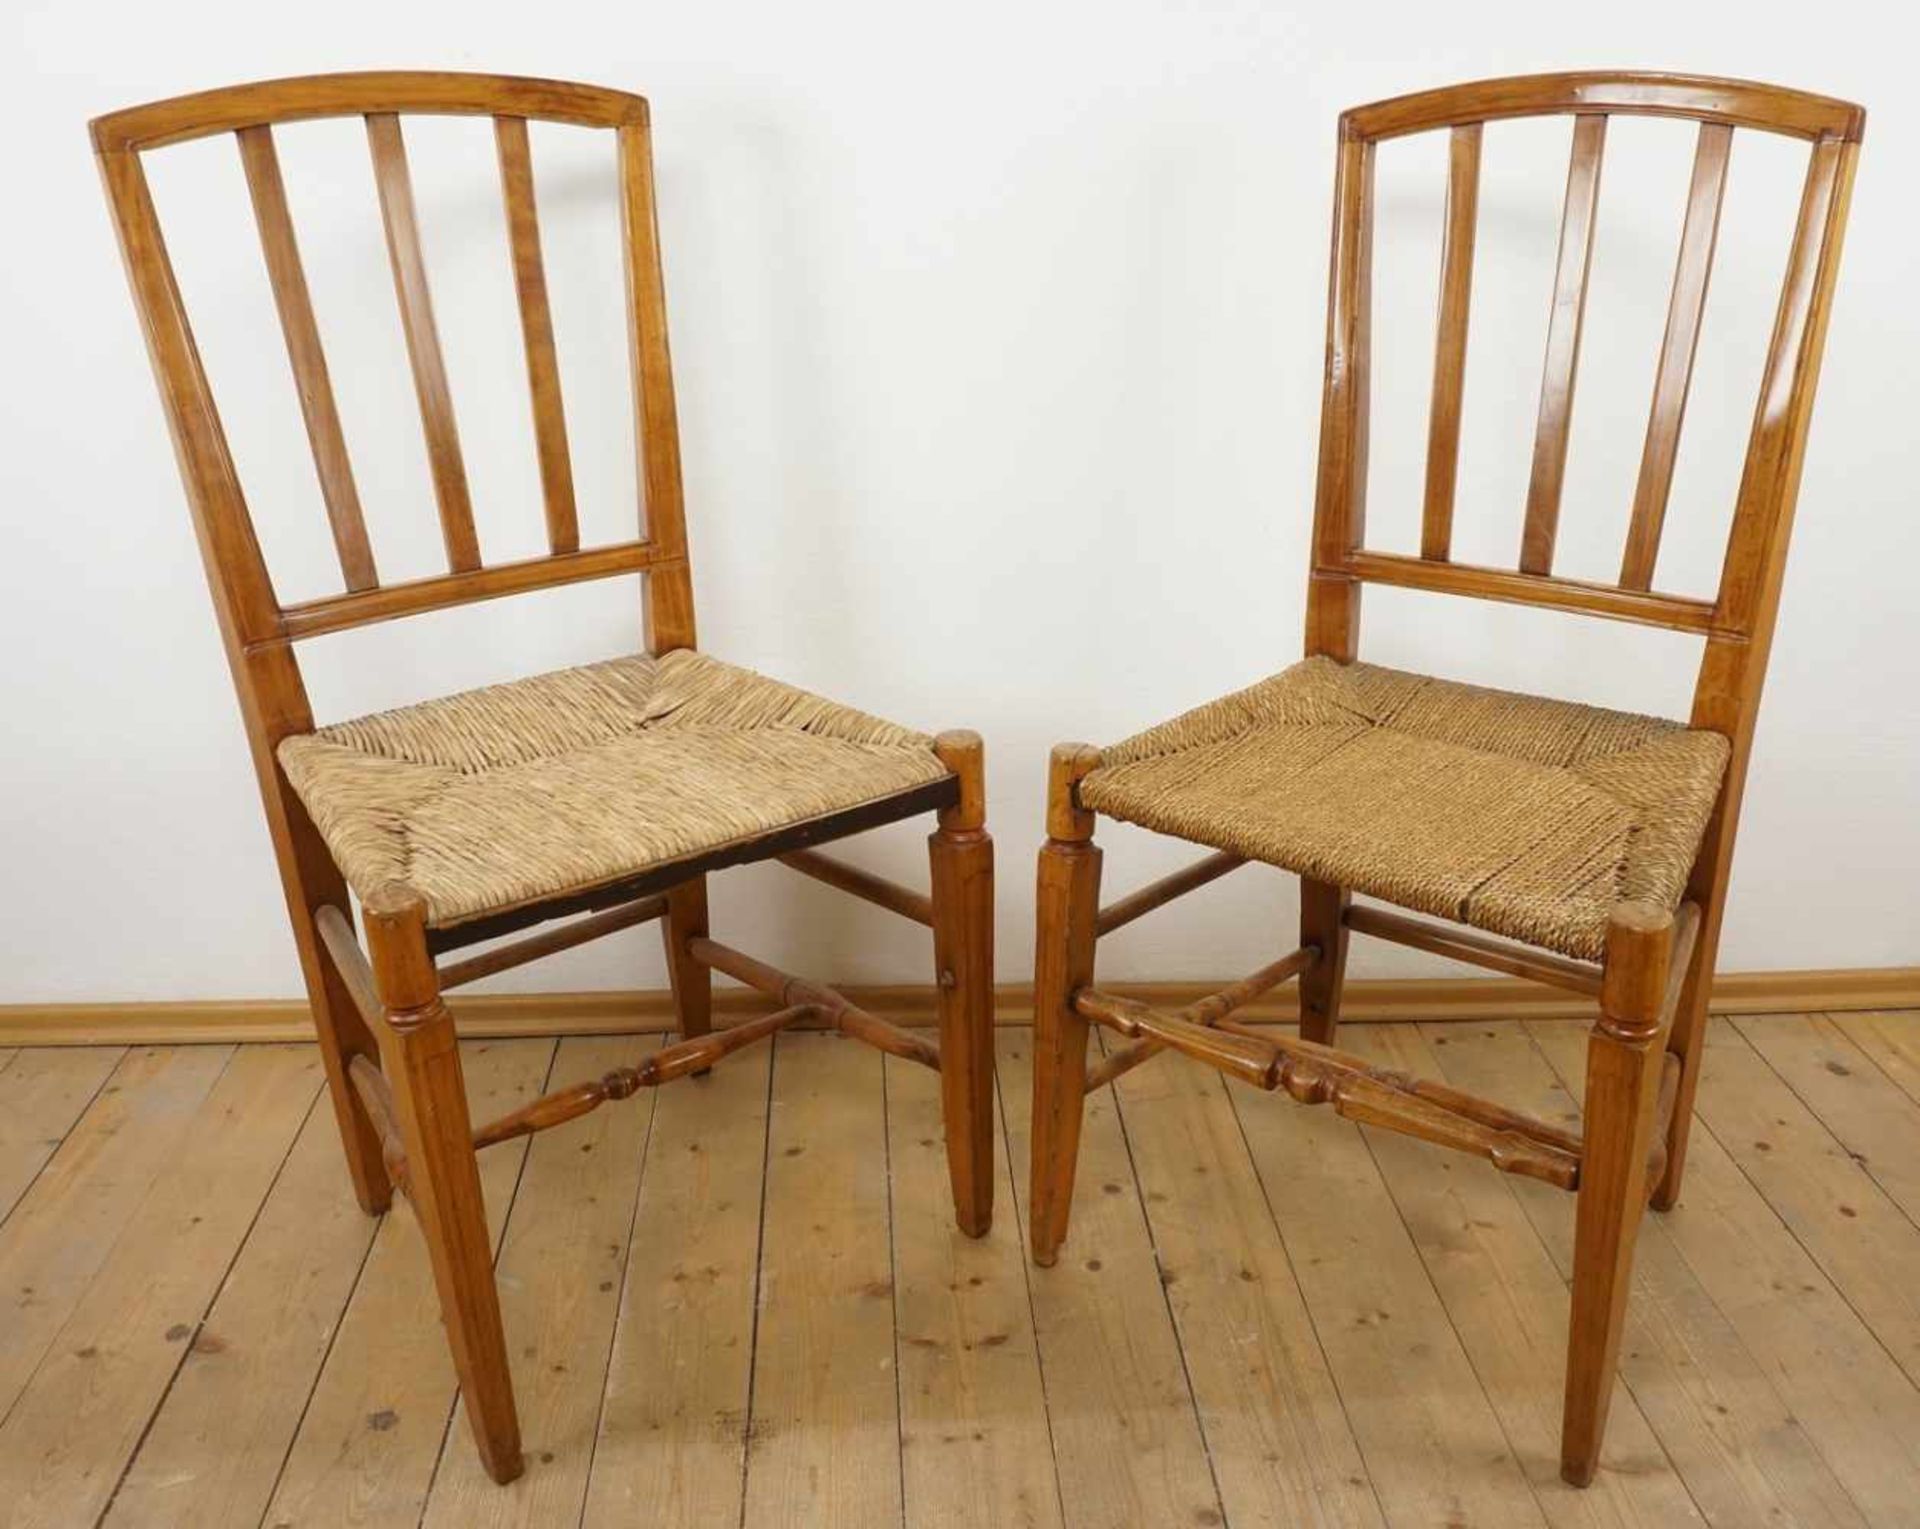 Zwei Norddeutsche Stühle aus dem Alten Land, Kirsche massiv